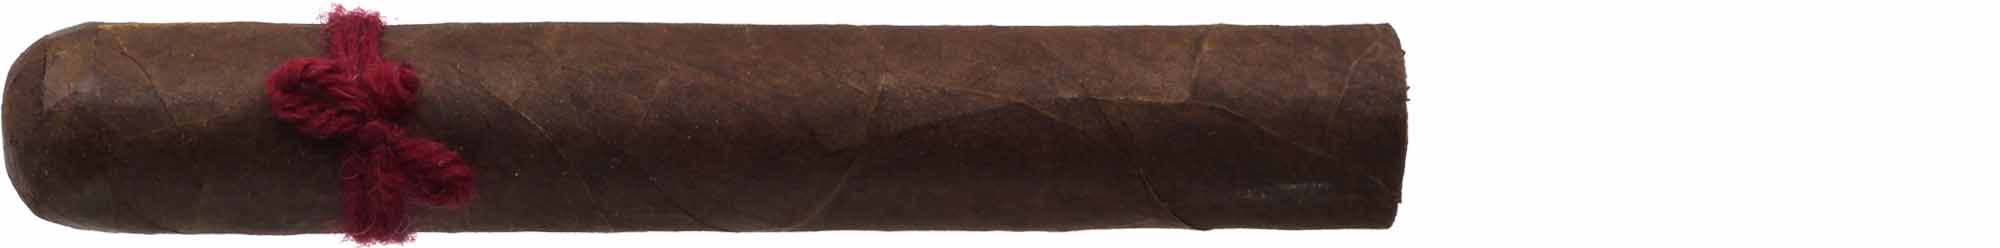 Furia Zigarren Megaera (roter Faden)